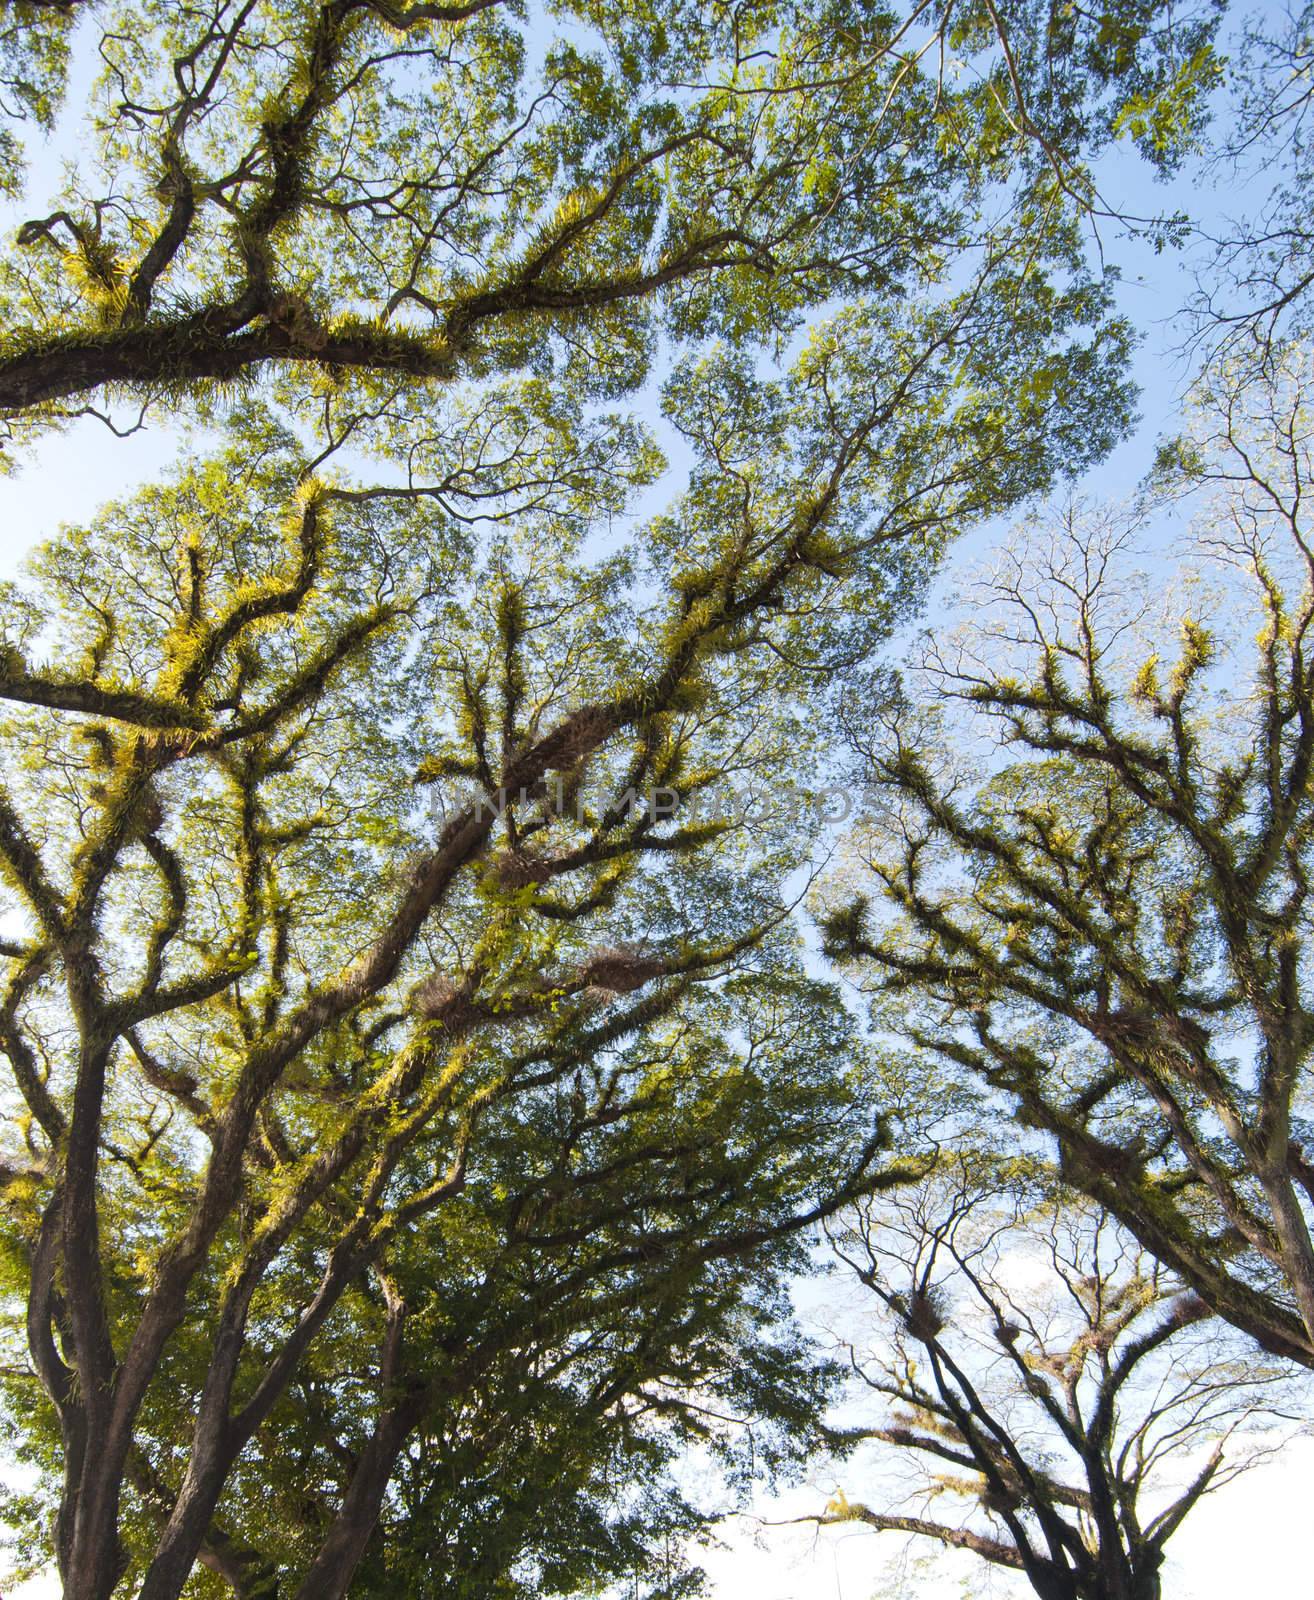 Textures of Bearded Mossman Trees in Queensland, Australia